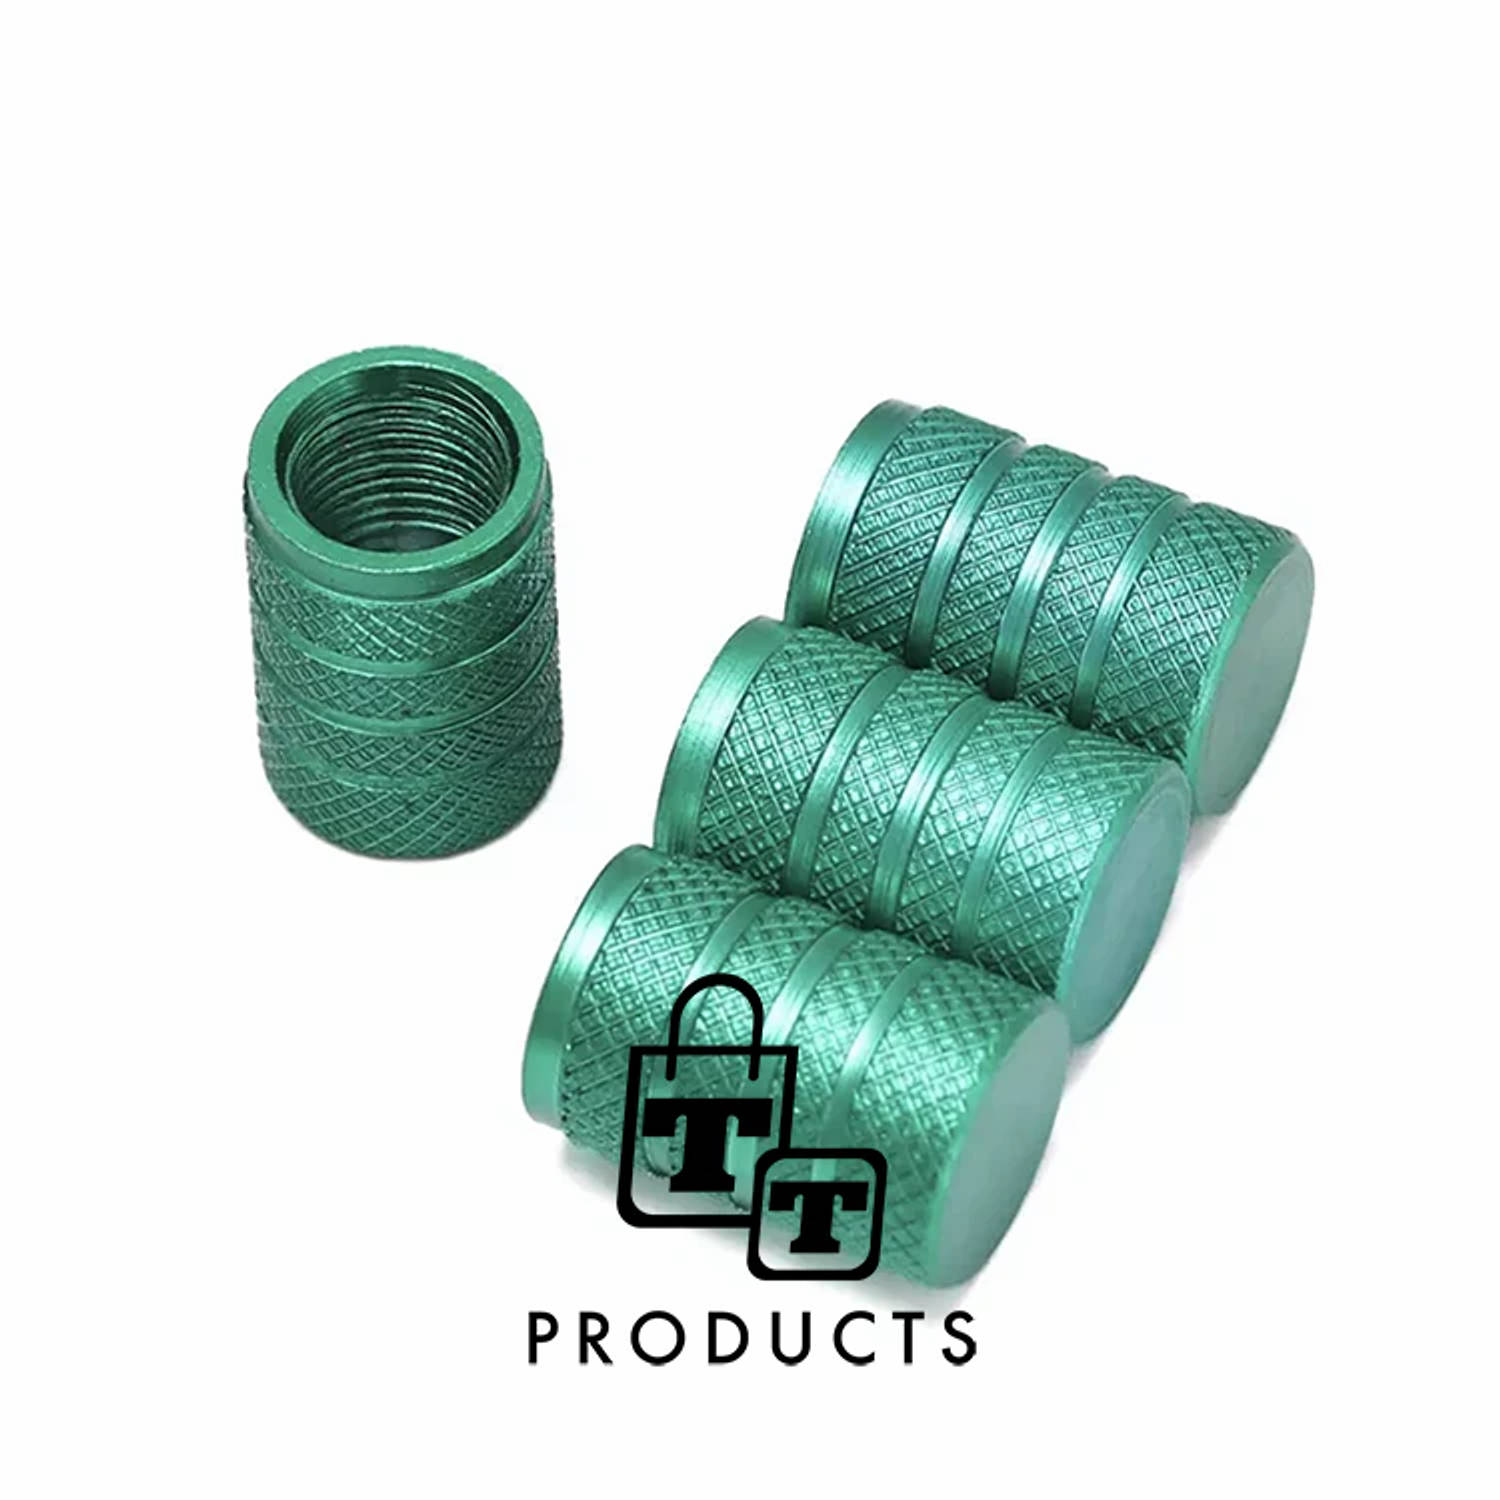 TT-products ventieldoppen 3-rings Green aluminium 4 stuks groen auto ventieldop ventieldopjes